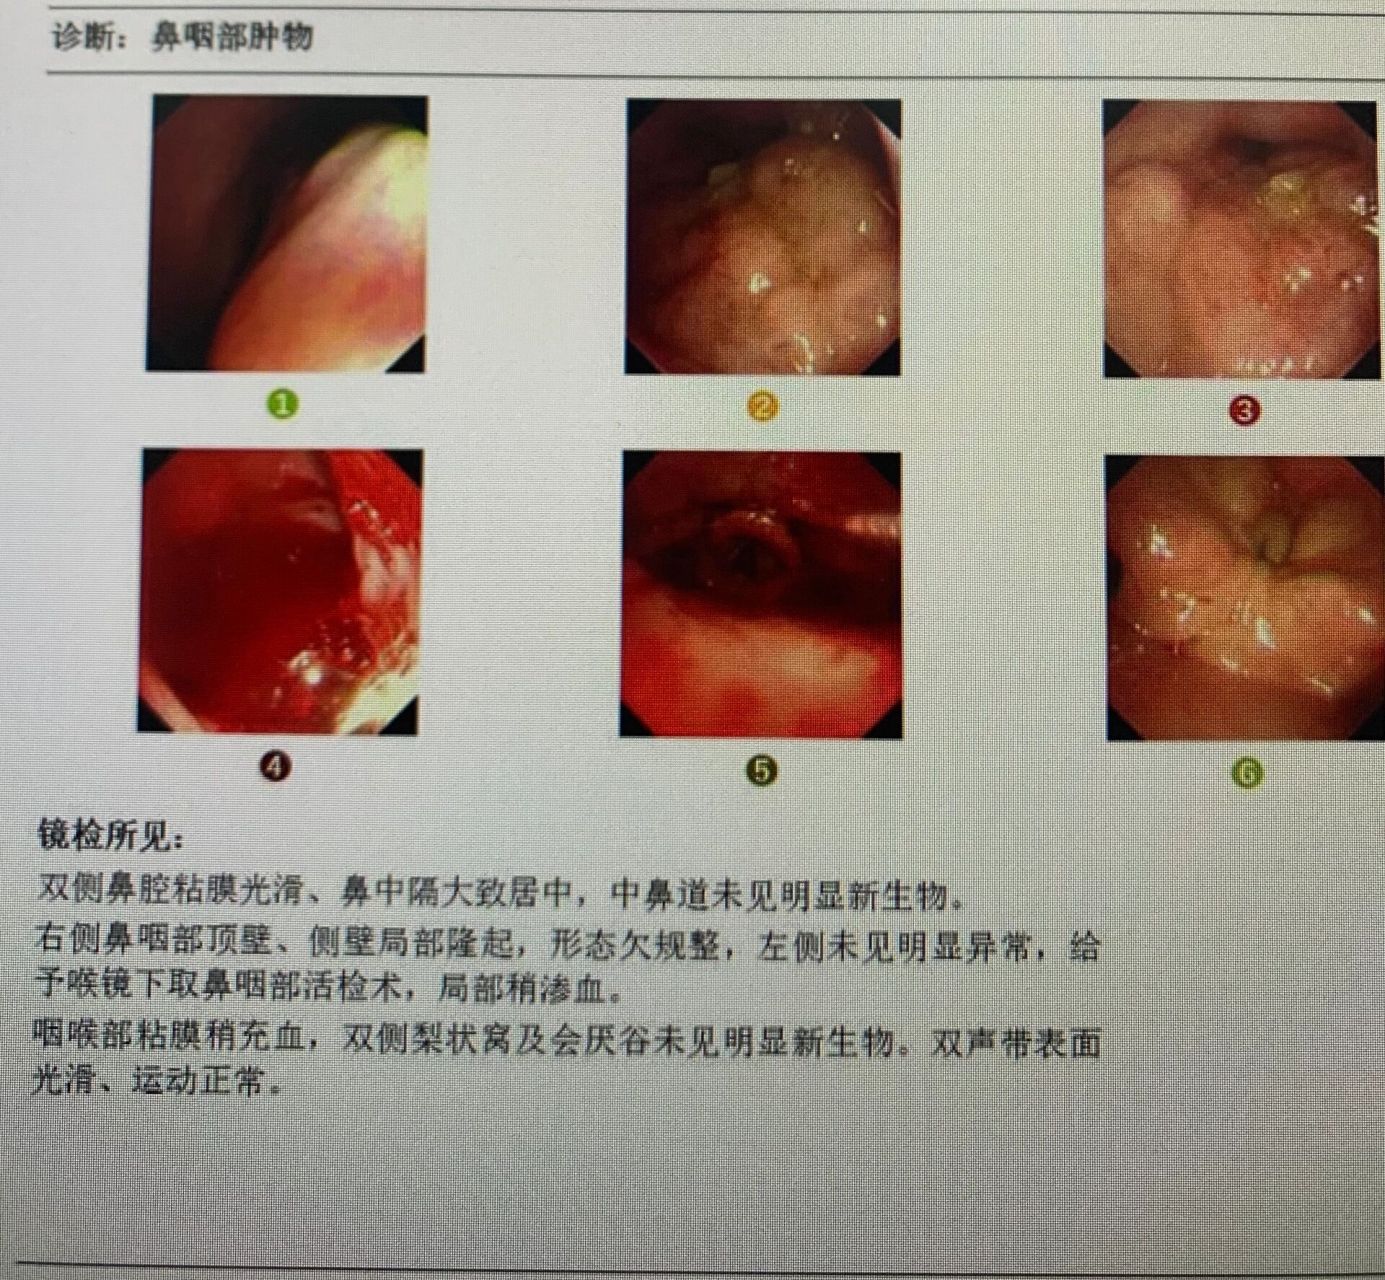 鼻咽癌早期症状 初期图片